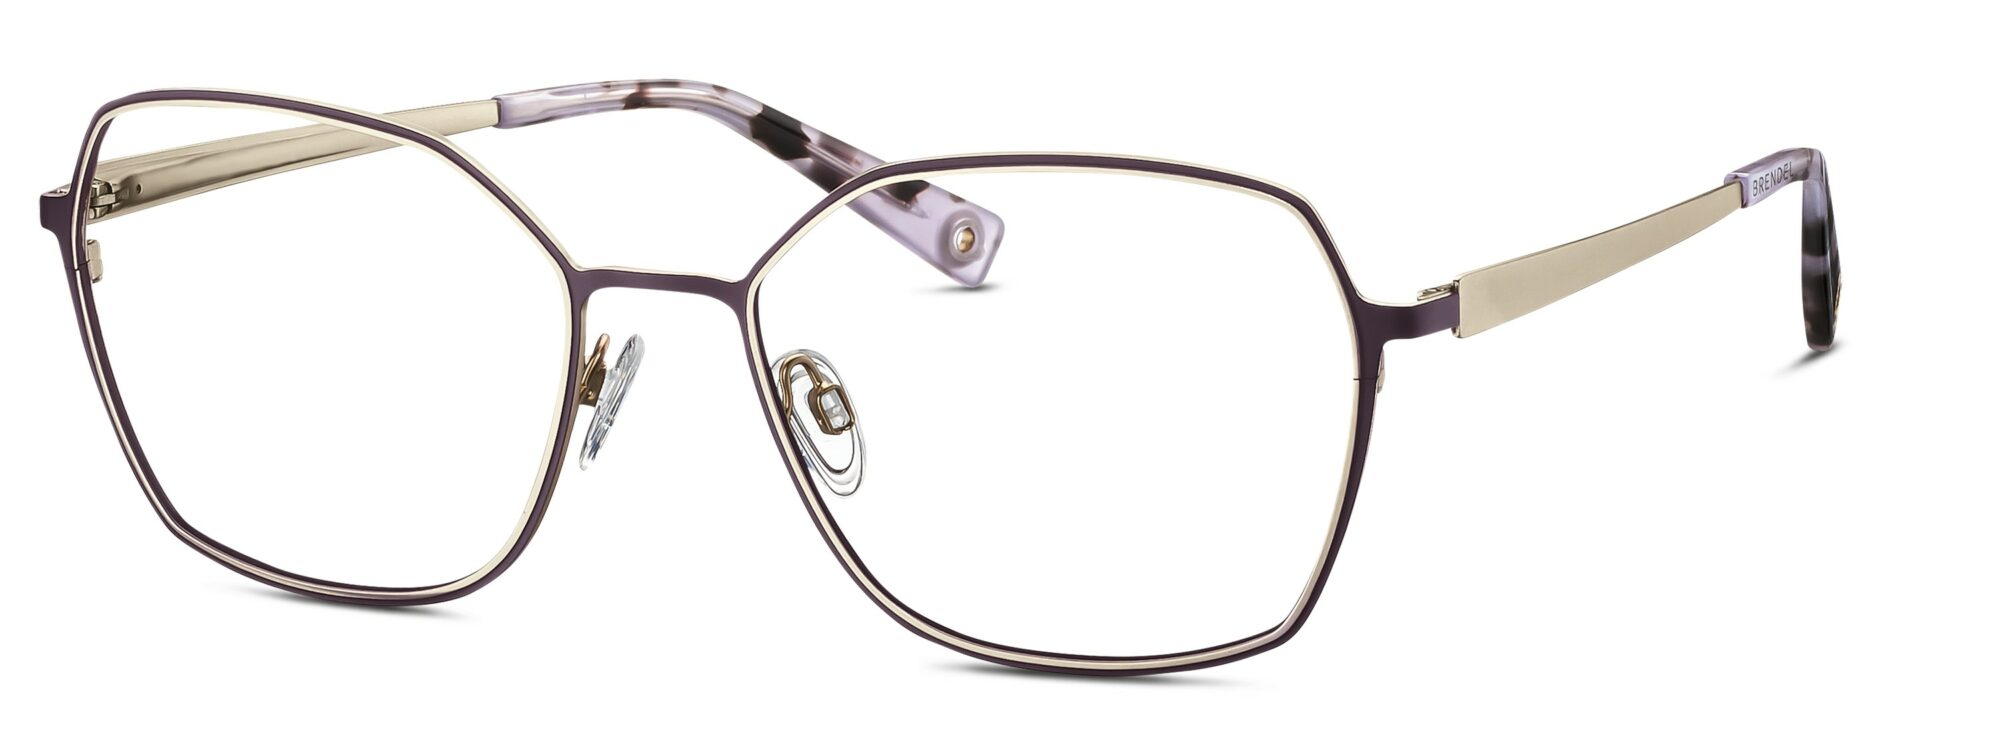 BRENDEL eyewear - 902365-25